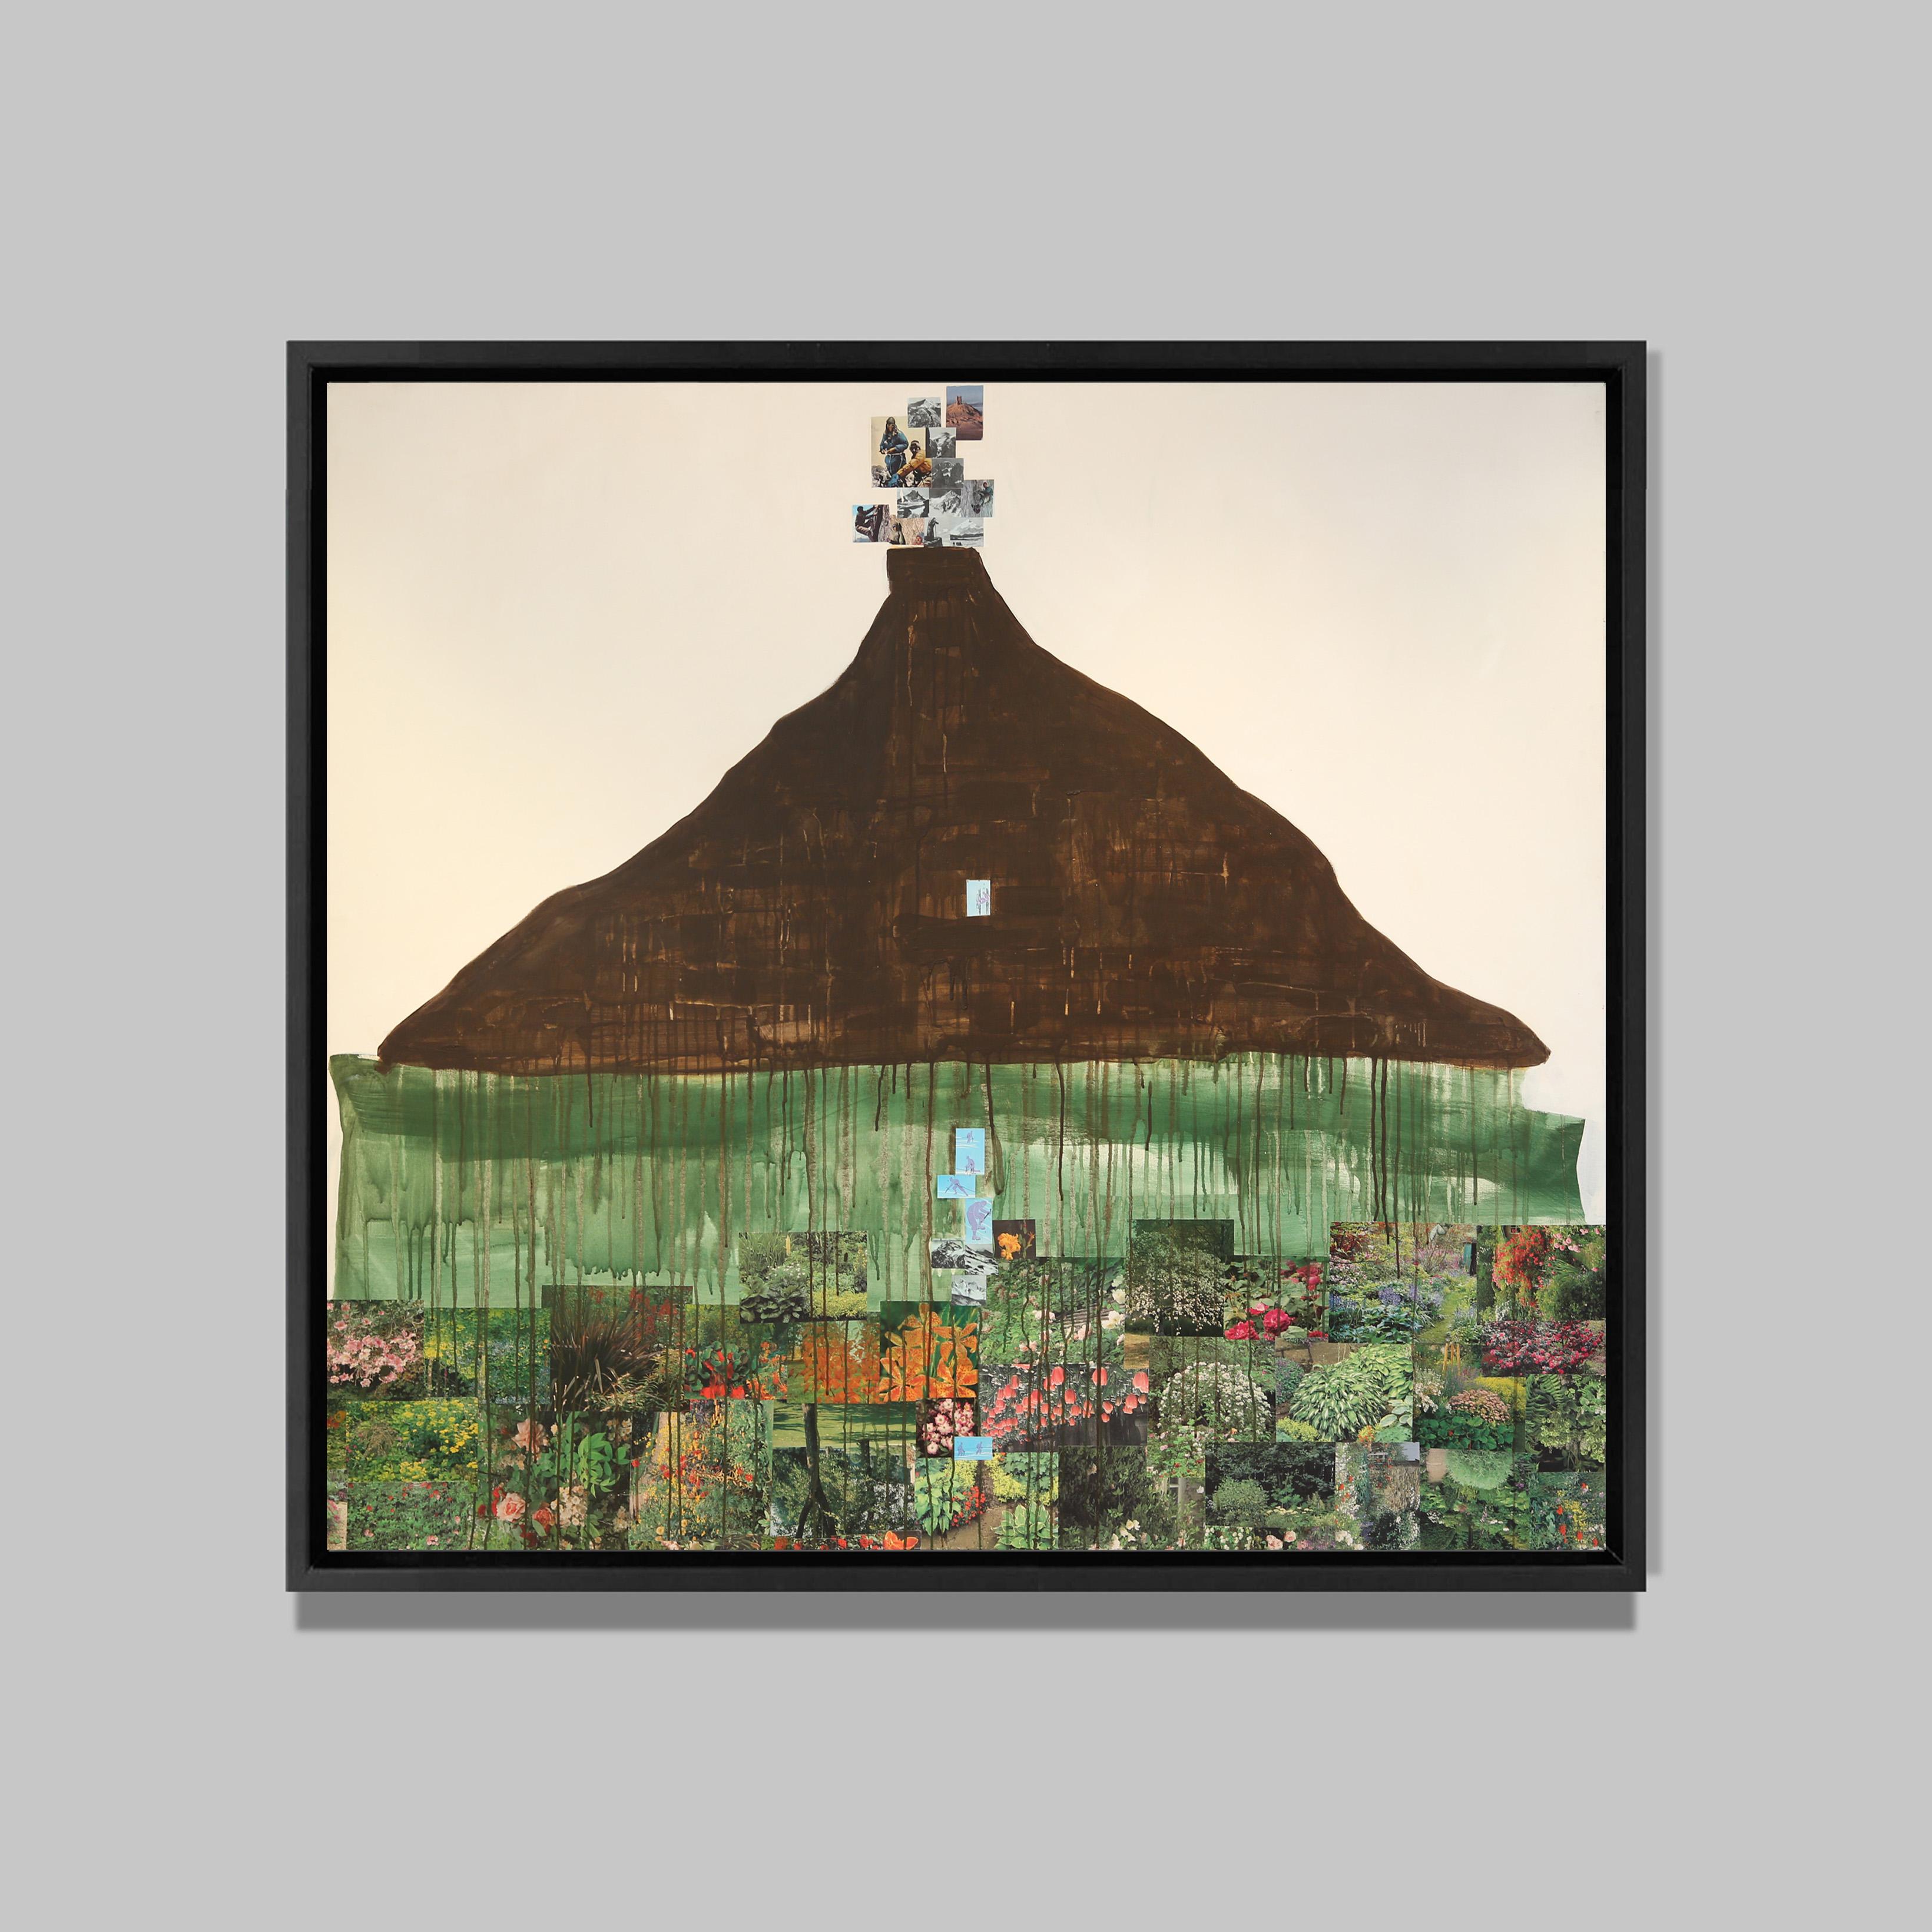 Toujours plus haut, 2015
Acrylique et collages sur toile
156 x 174 cm